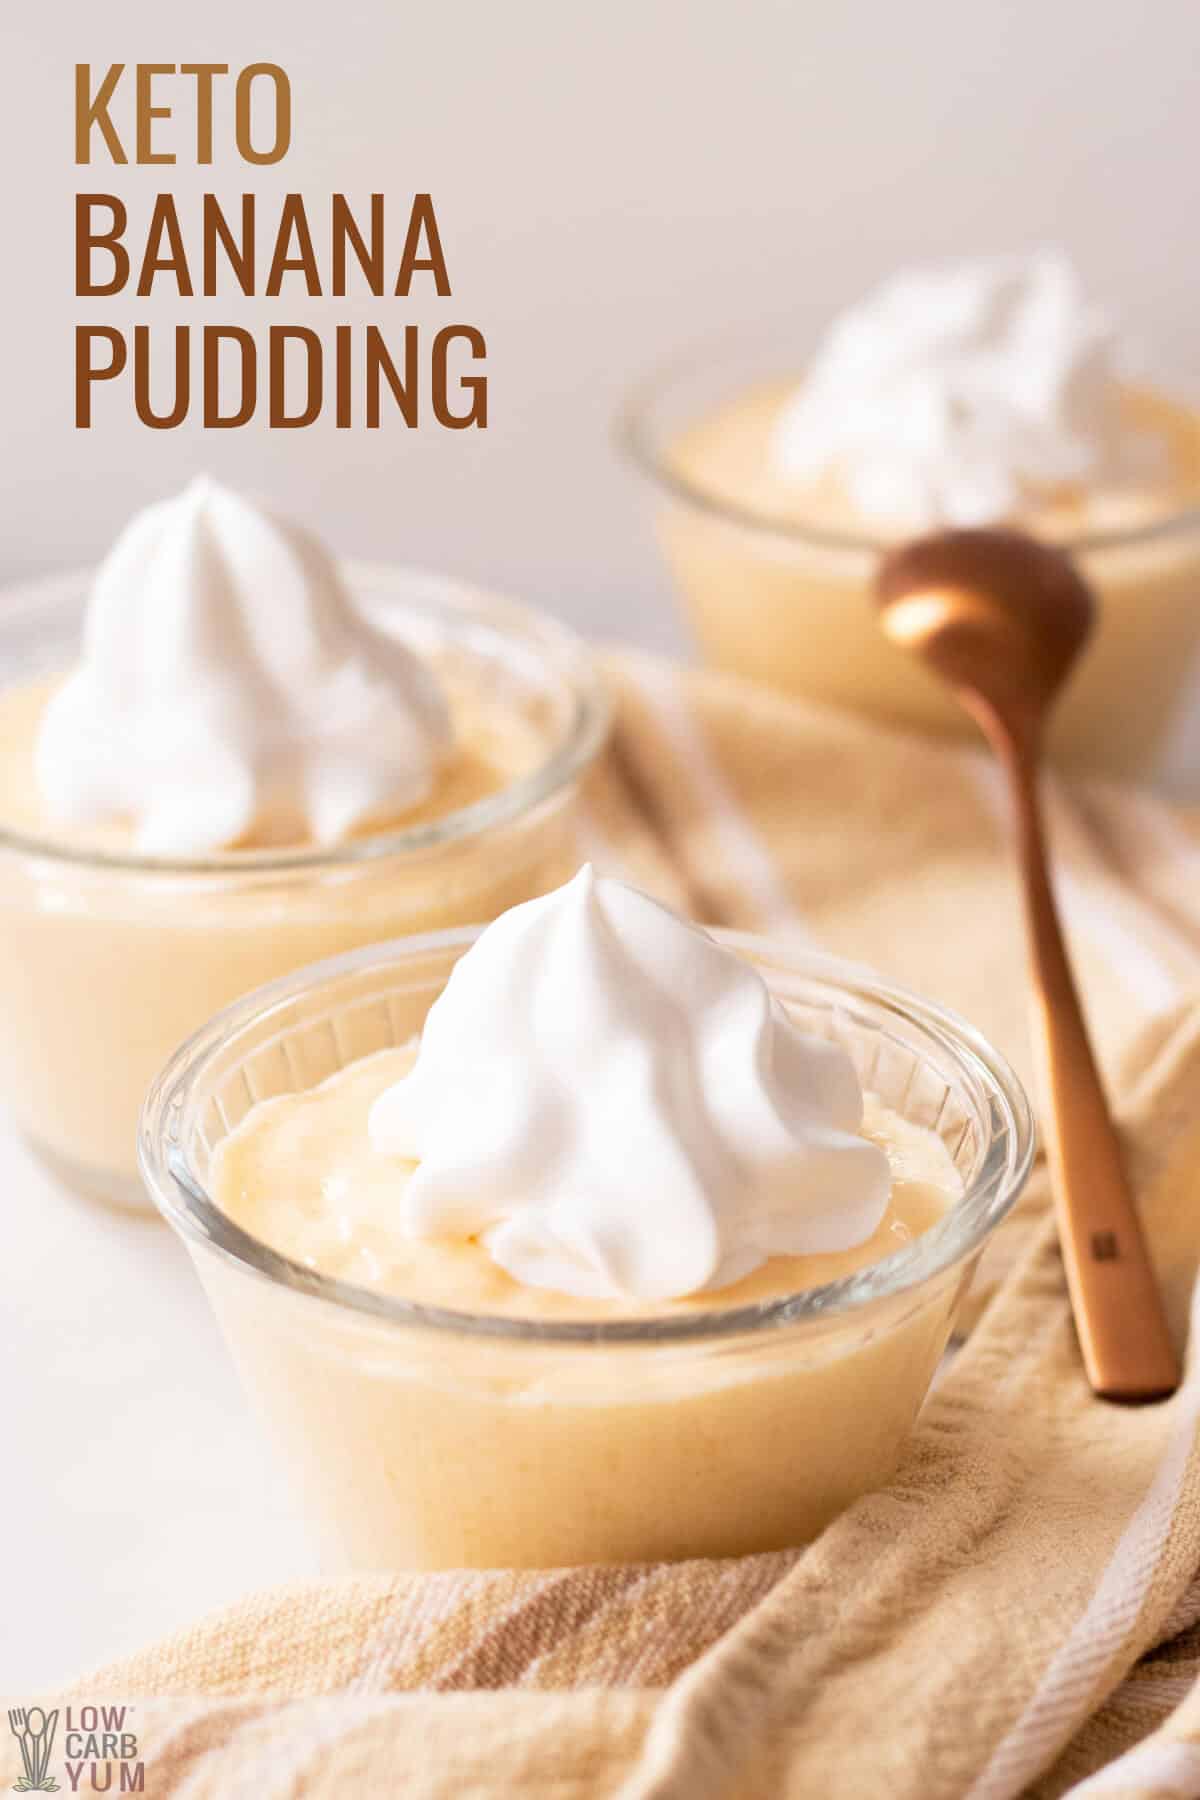 keto sugar free banana pudding recipe in glass dessert dishes